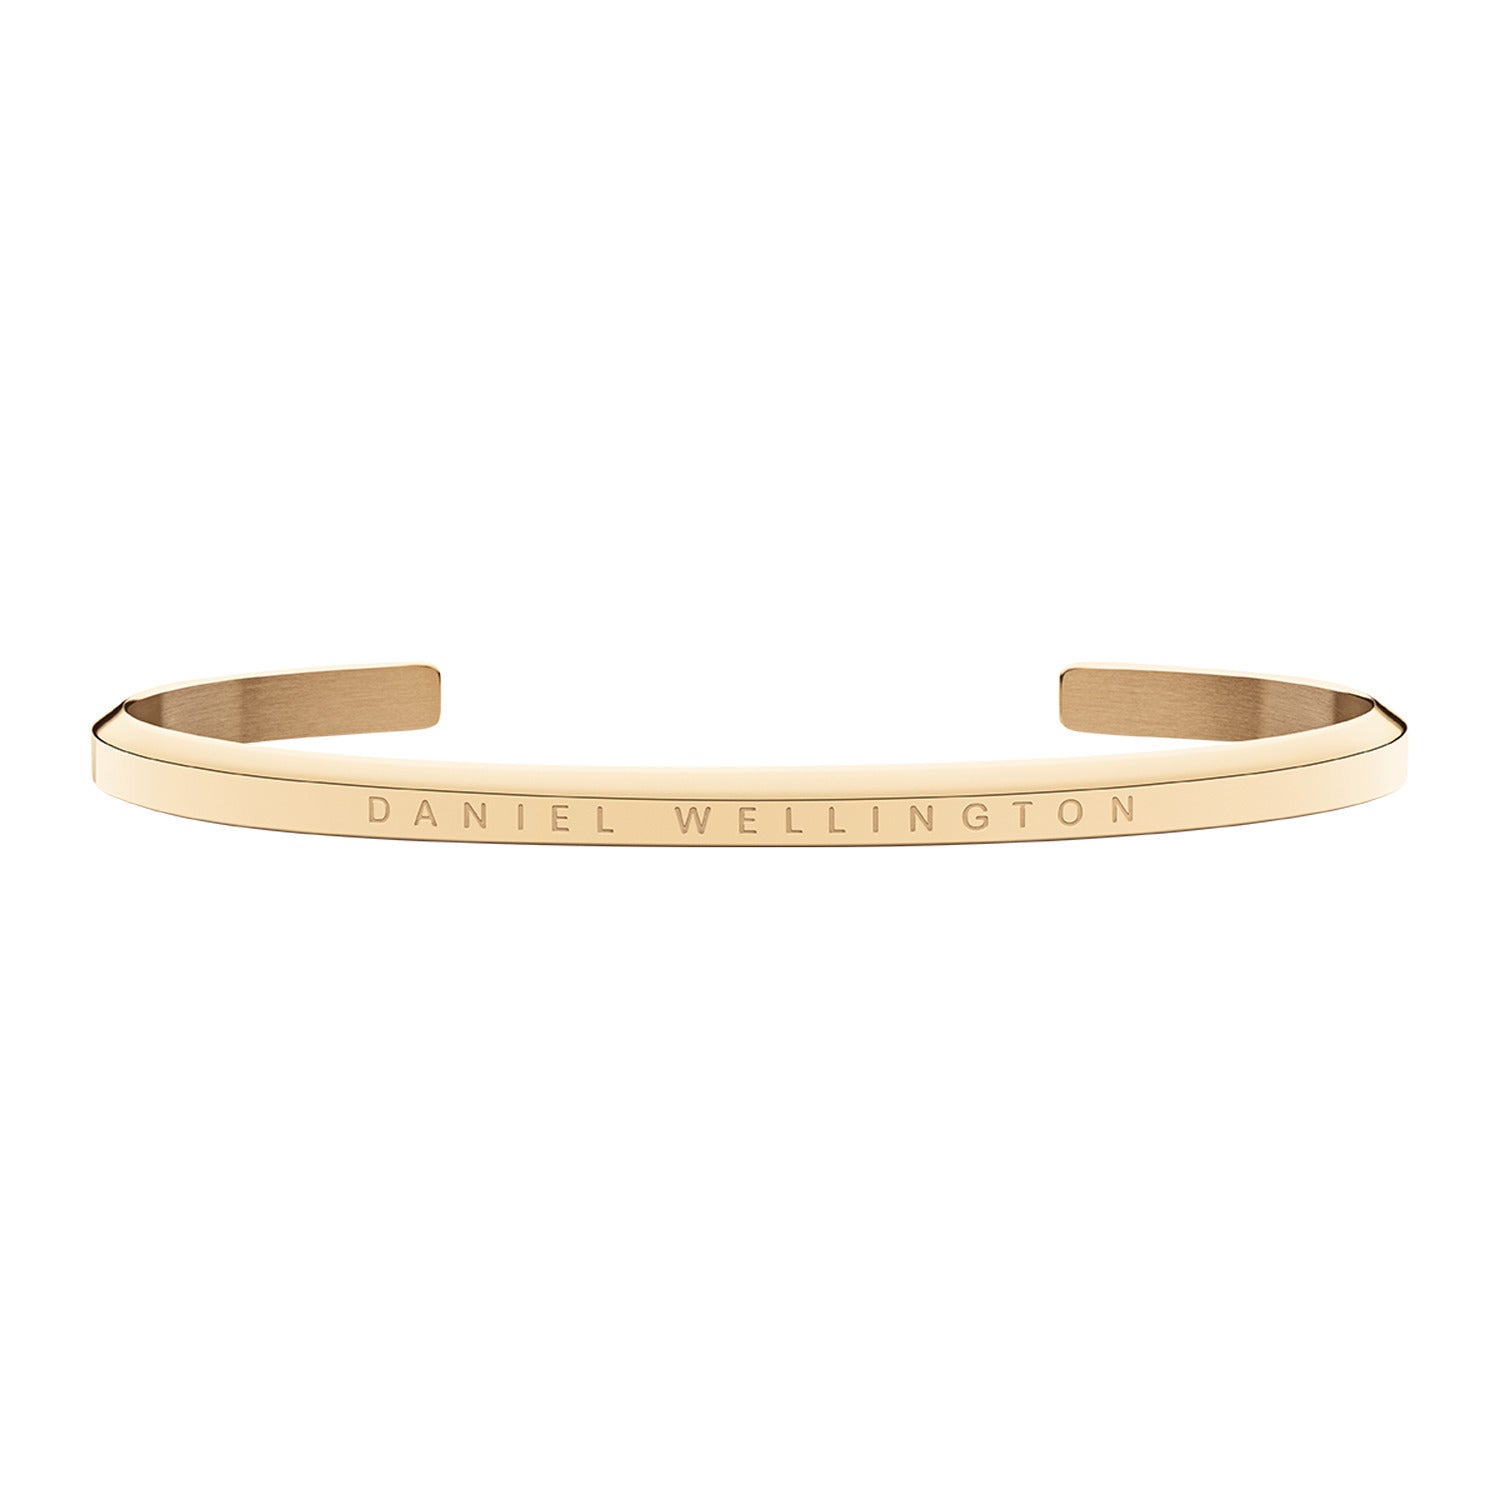 Daniel Wellington Gold Tone Bracelet for Women - DWCFF-0019